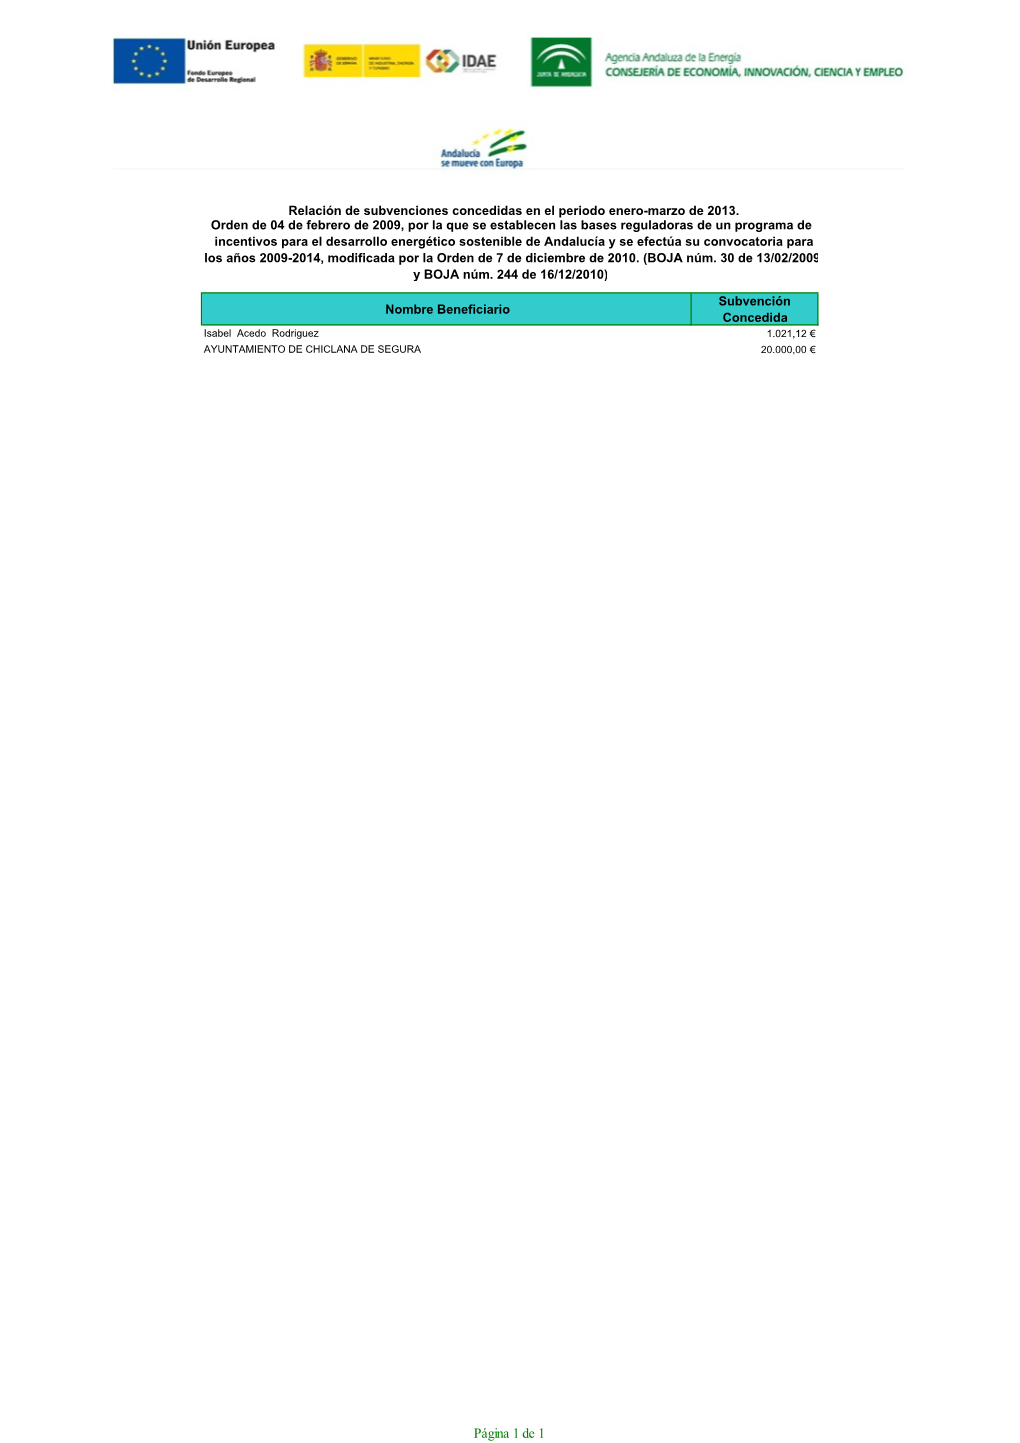 Página 1 De 1 Relación De Subvenciones Concedidas En El Periodo Enero-Marzo De 2013, Cofinanciadas Con Fondos Del Programa Operativo FEDER De Andalucía 2007-2013